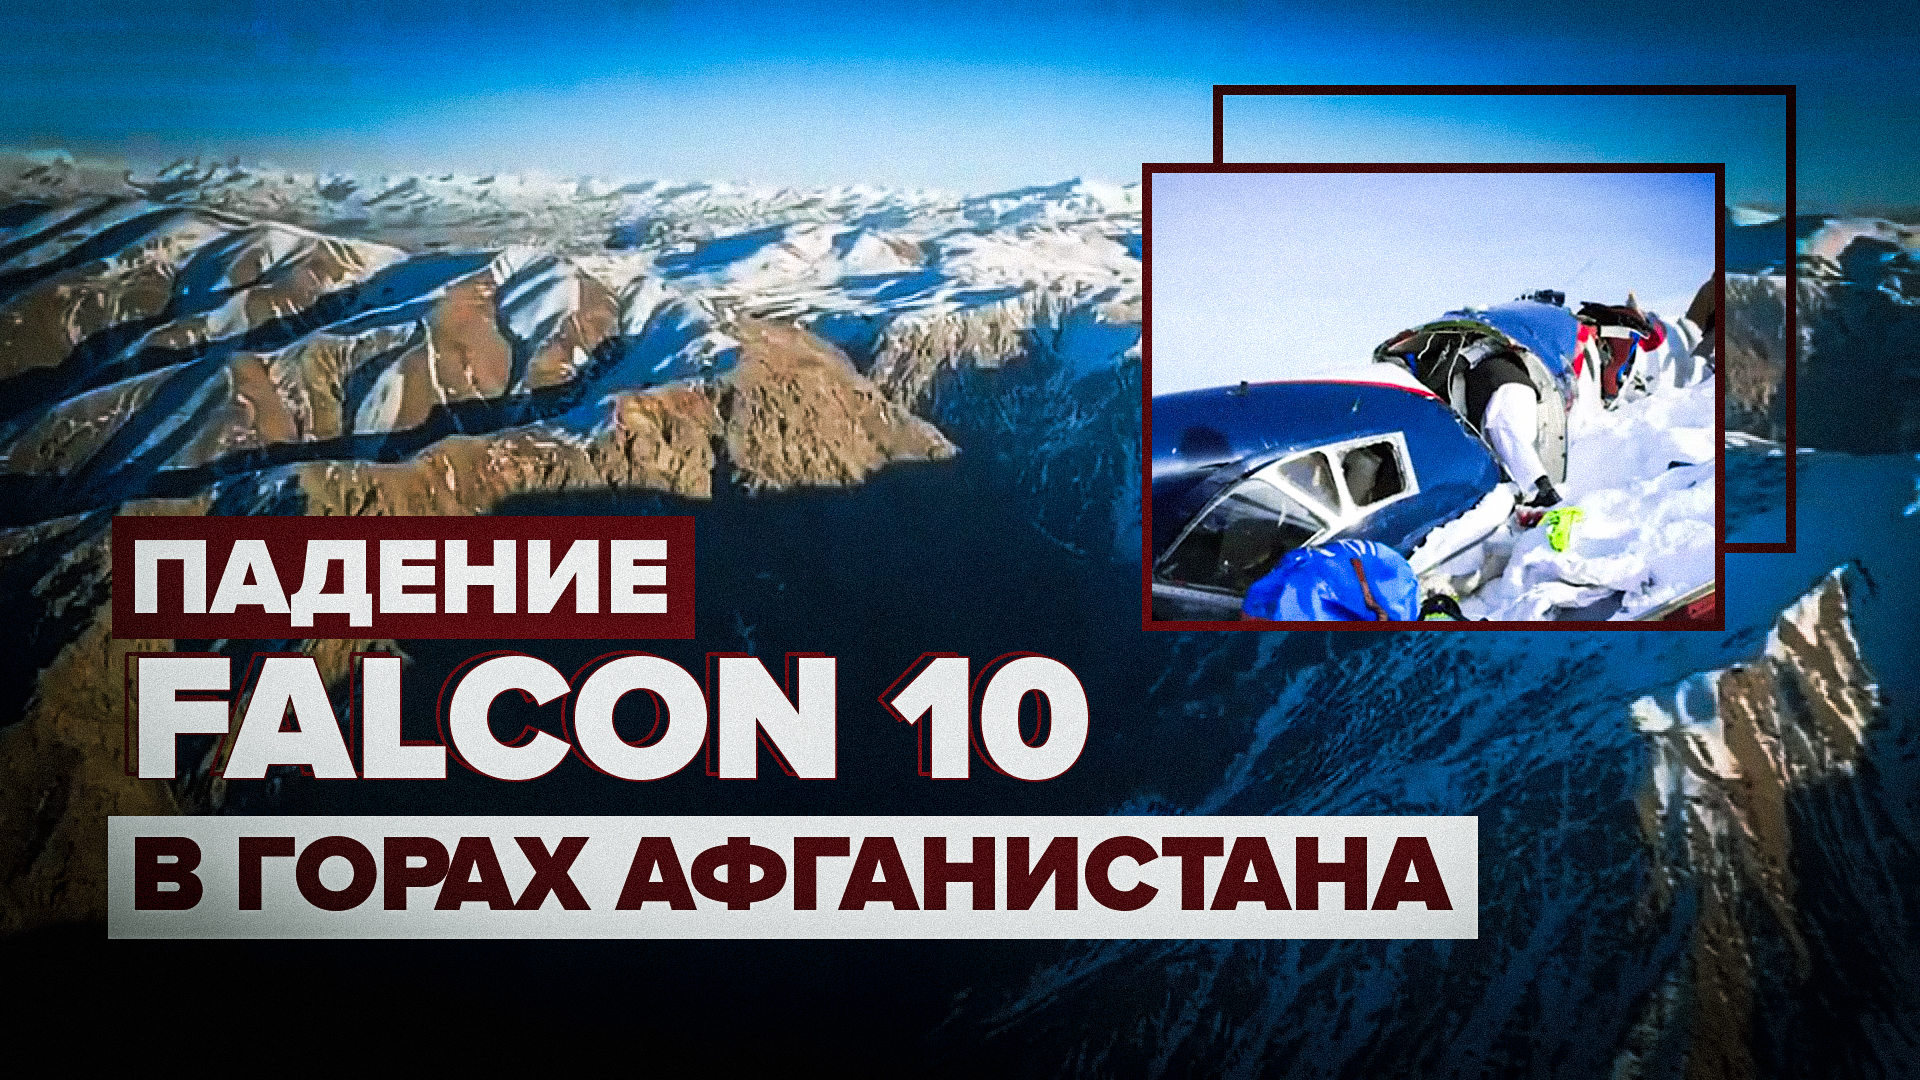 Четверо выживших: что известно о крушении Falcon 10 с россиянами в горах Афганистана